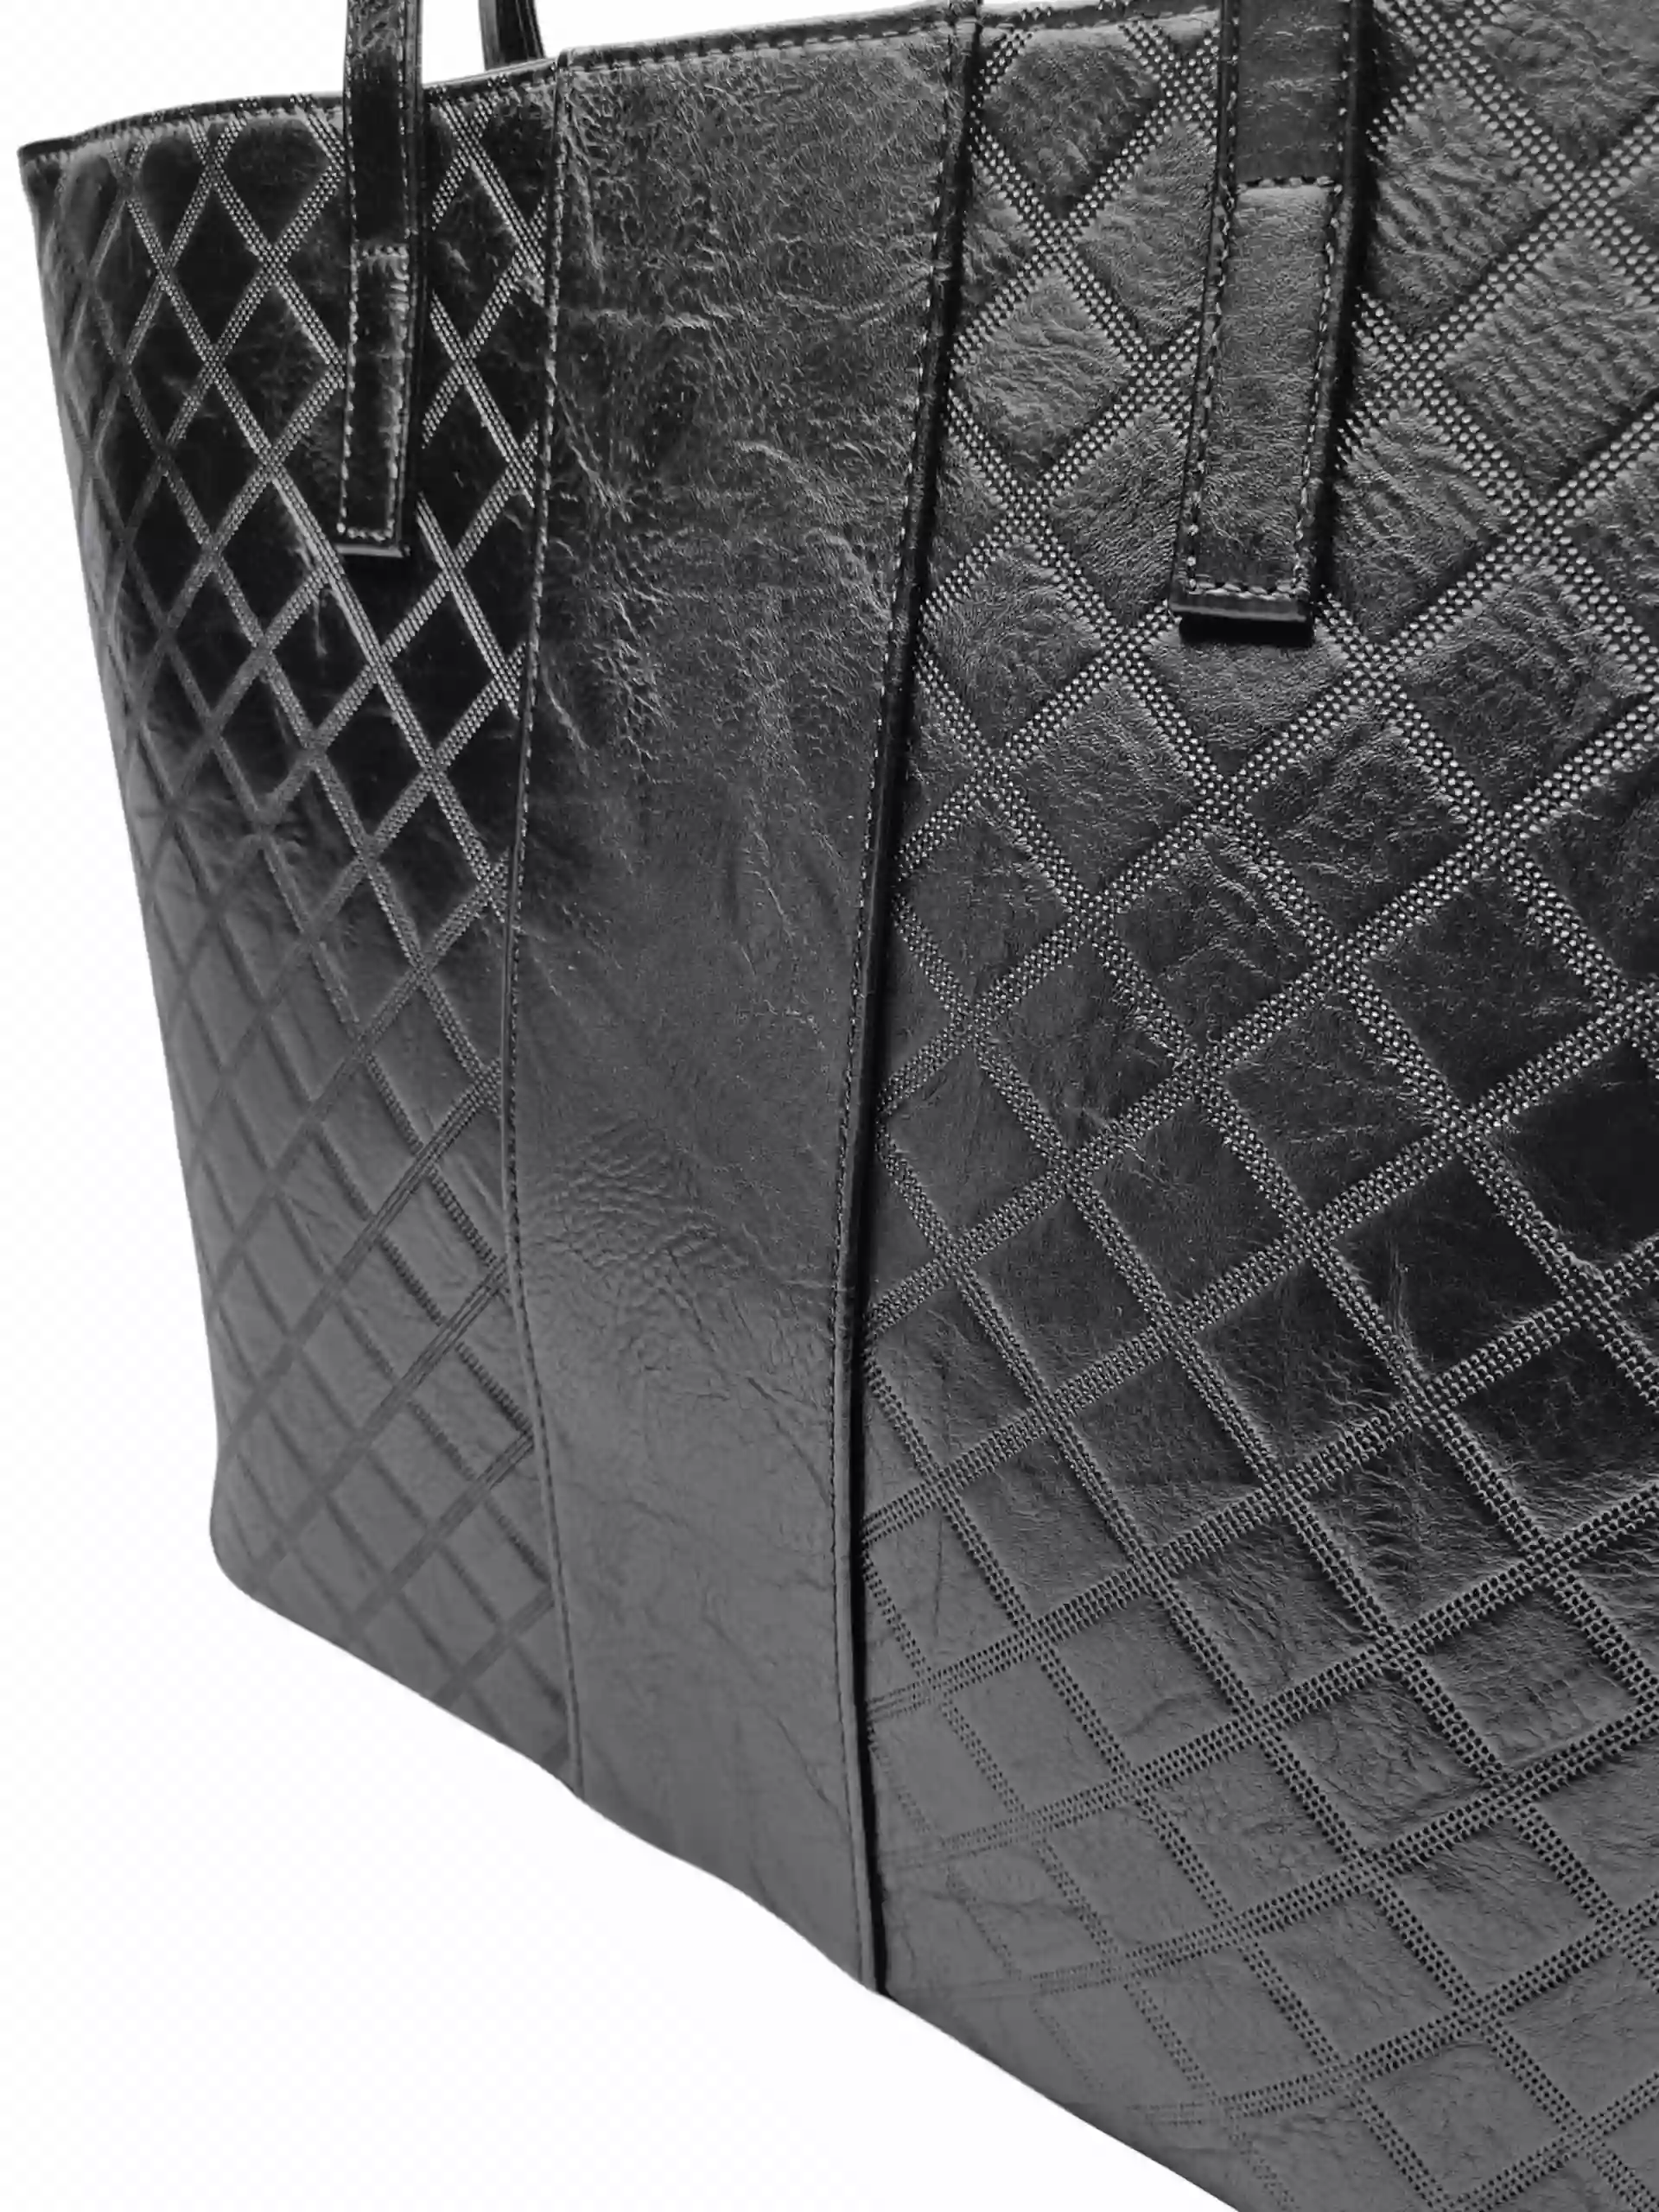 Velká černá kabelka přes rameno se vzory, Tapple, H22930-1, detail kabelky přes rameno